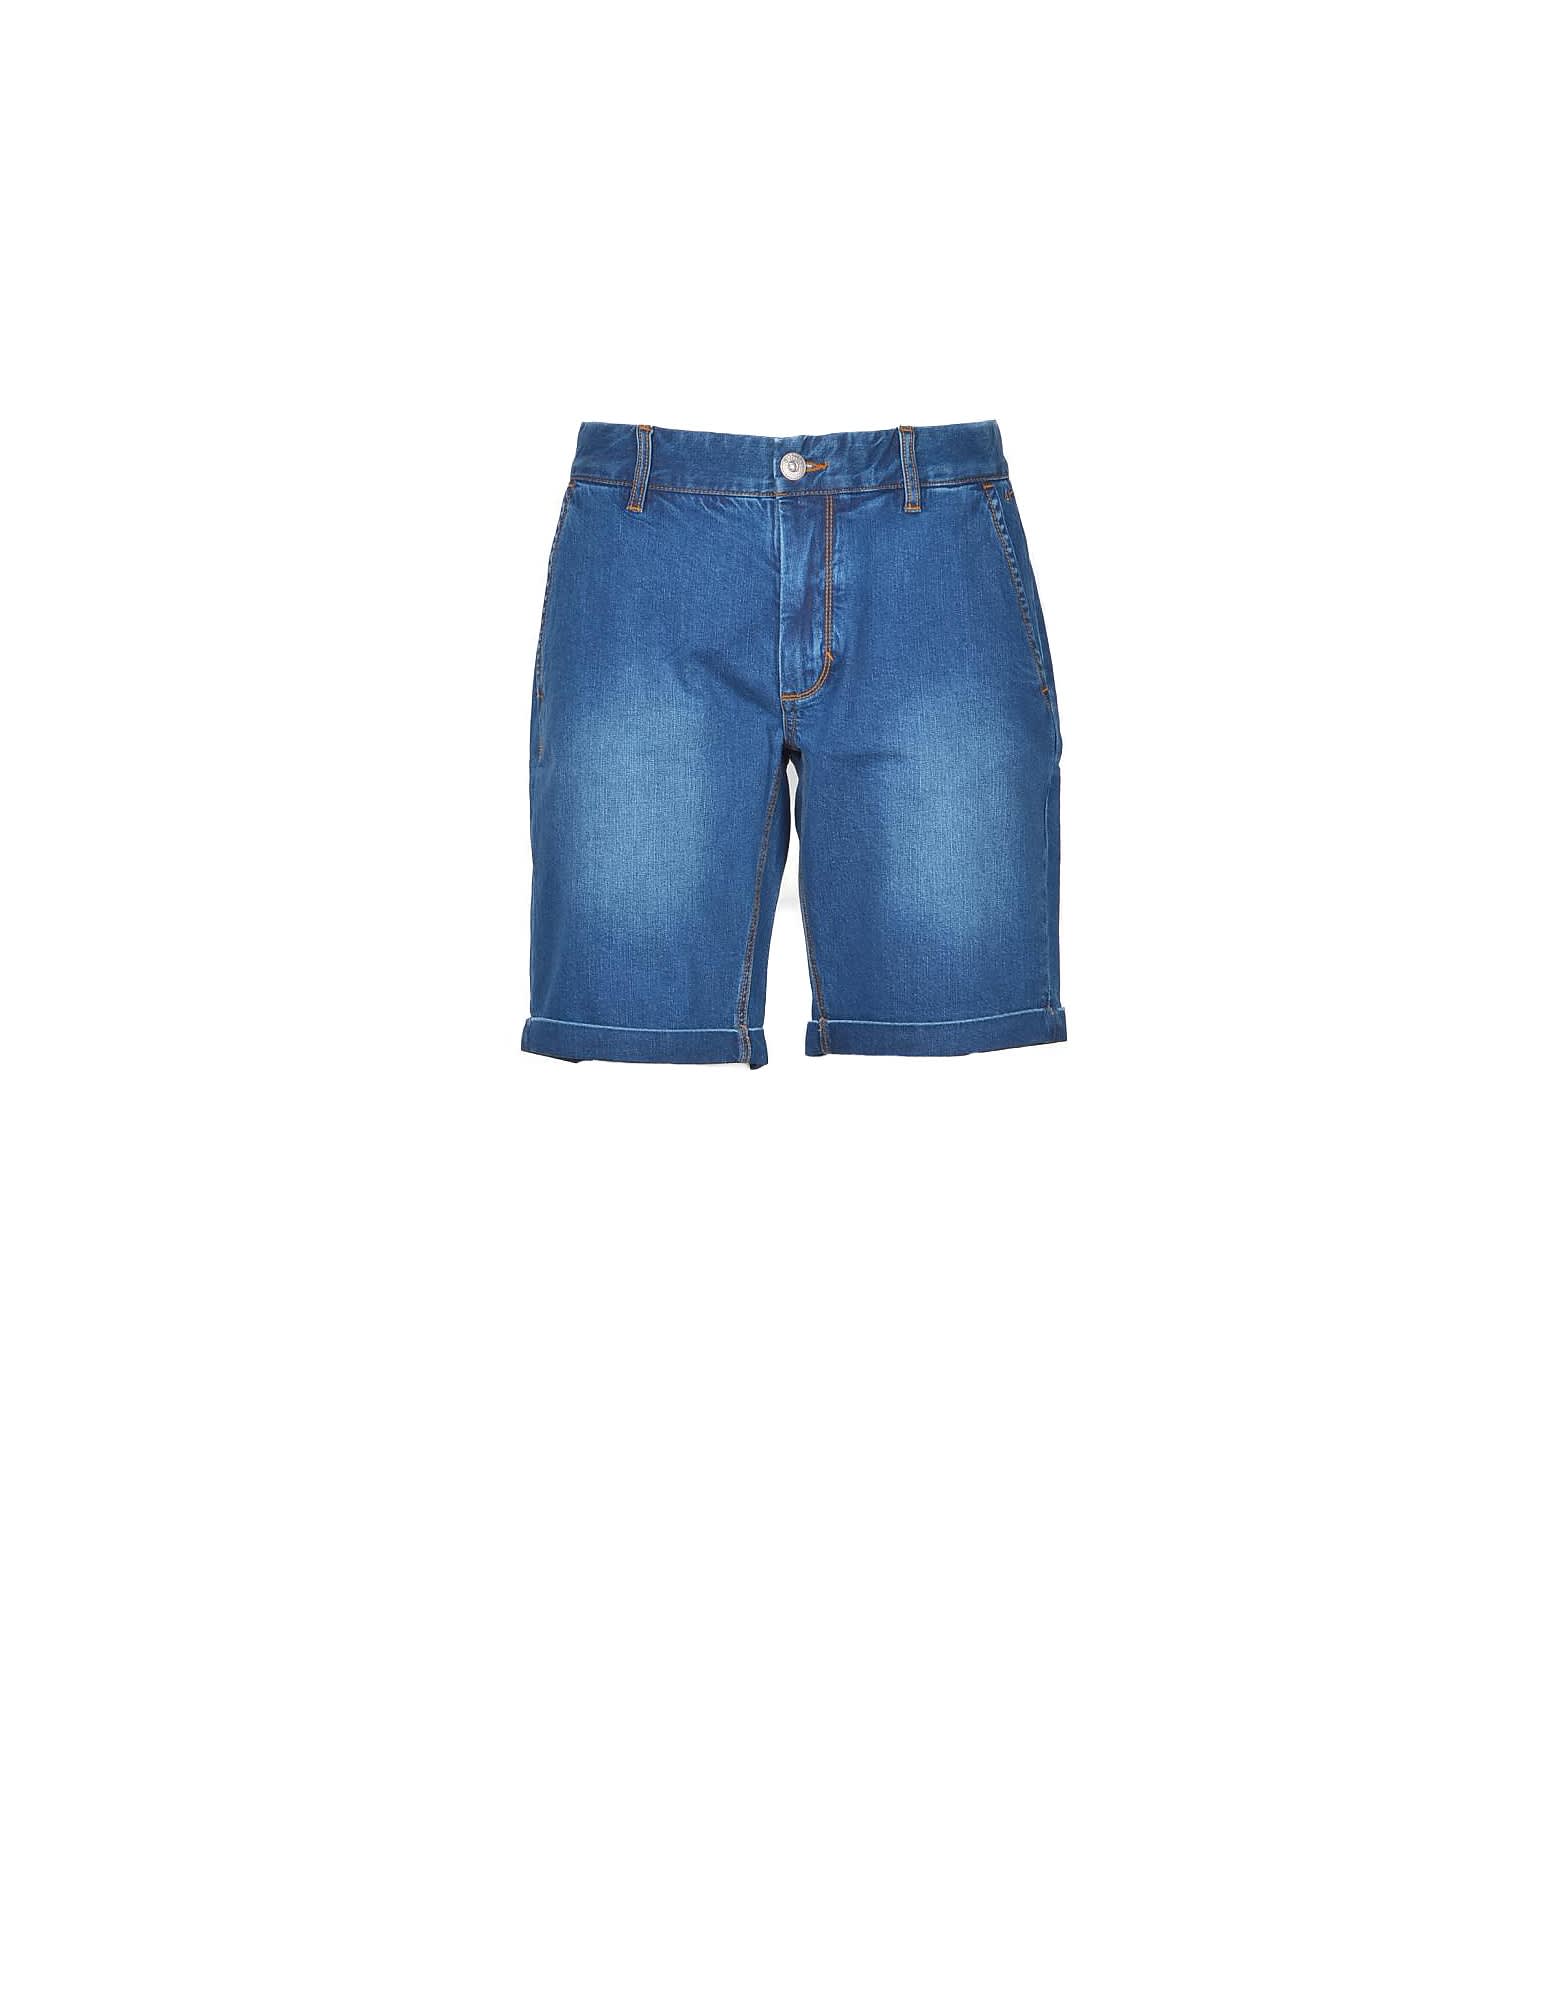 Sun 68 Sun68 Mens Blue Bermuda Shorts